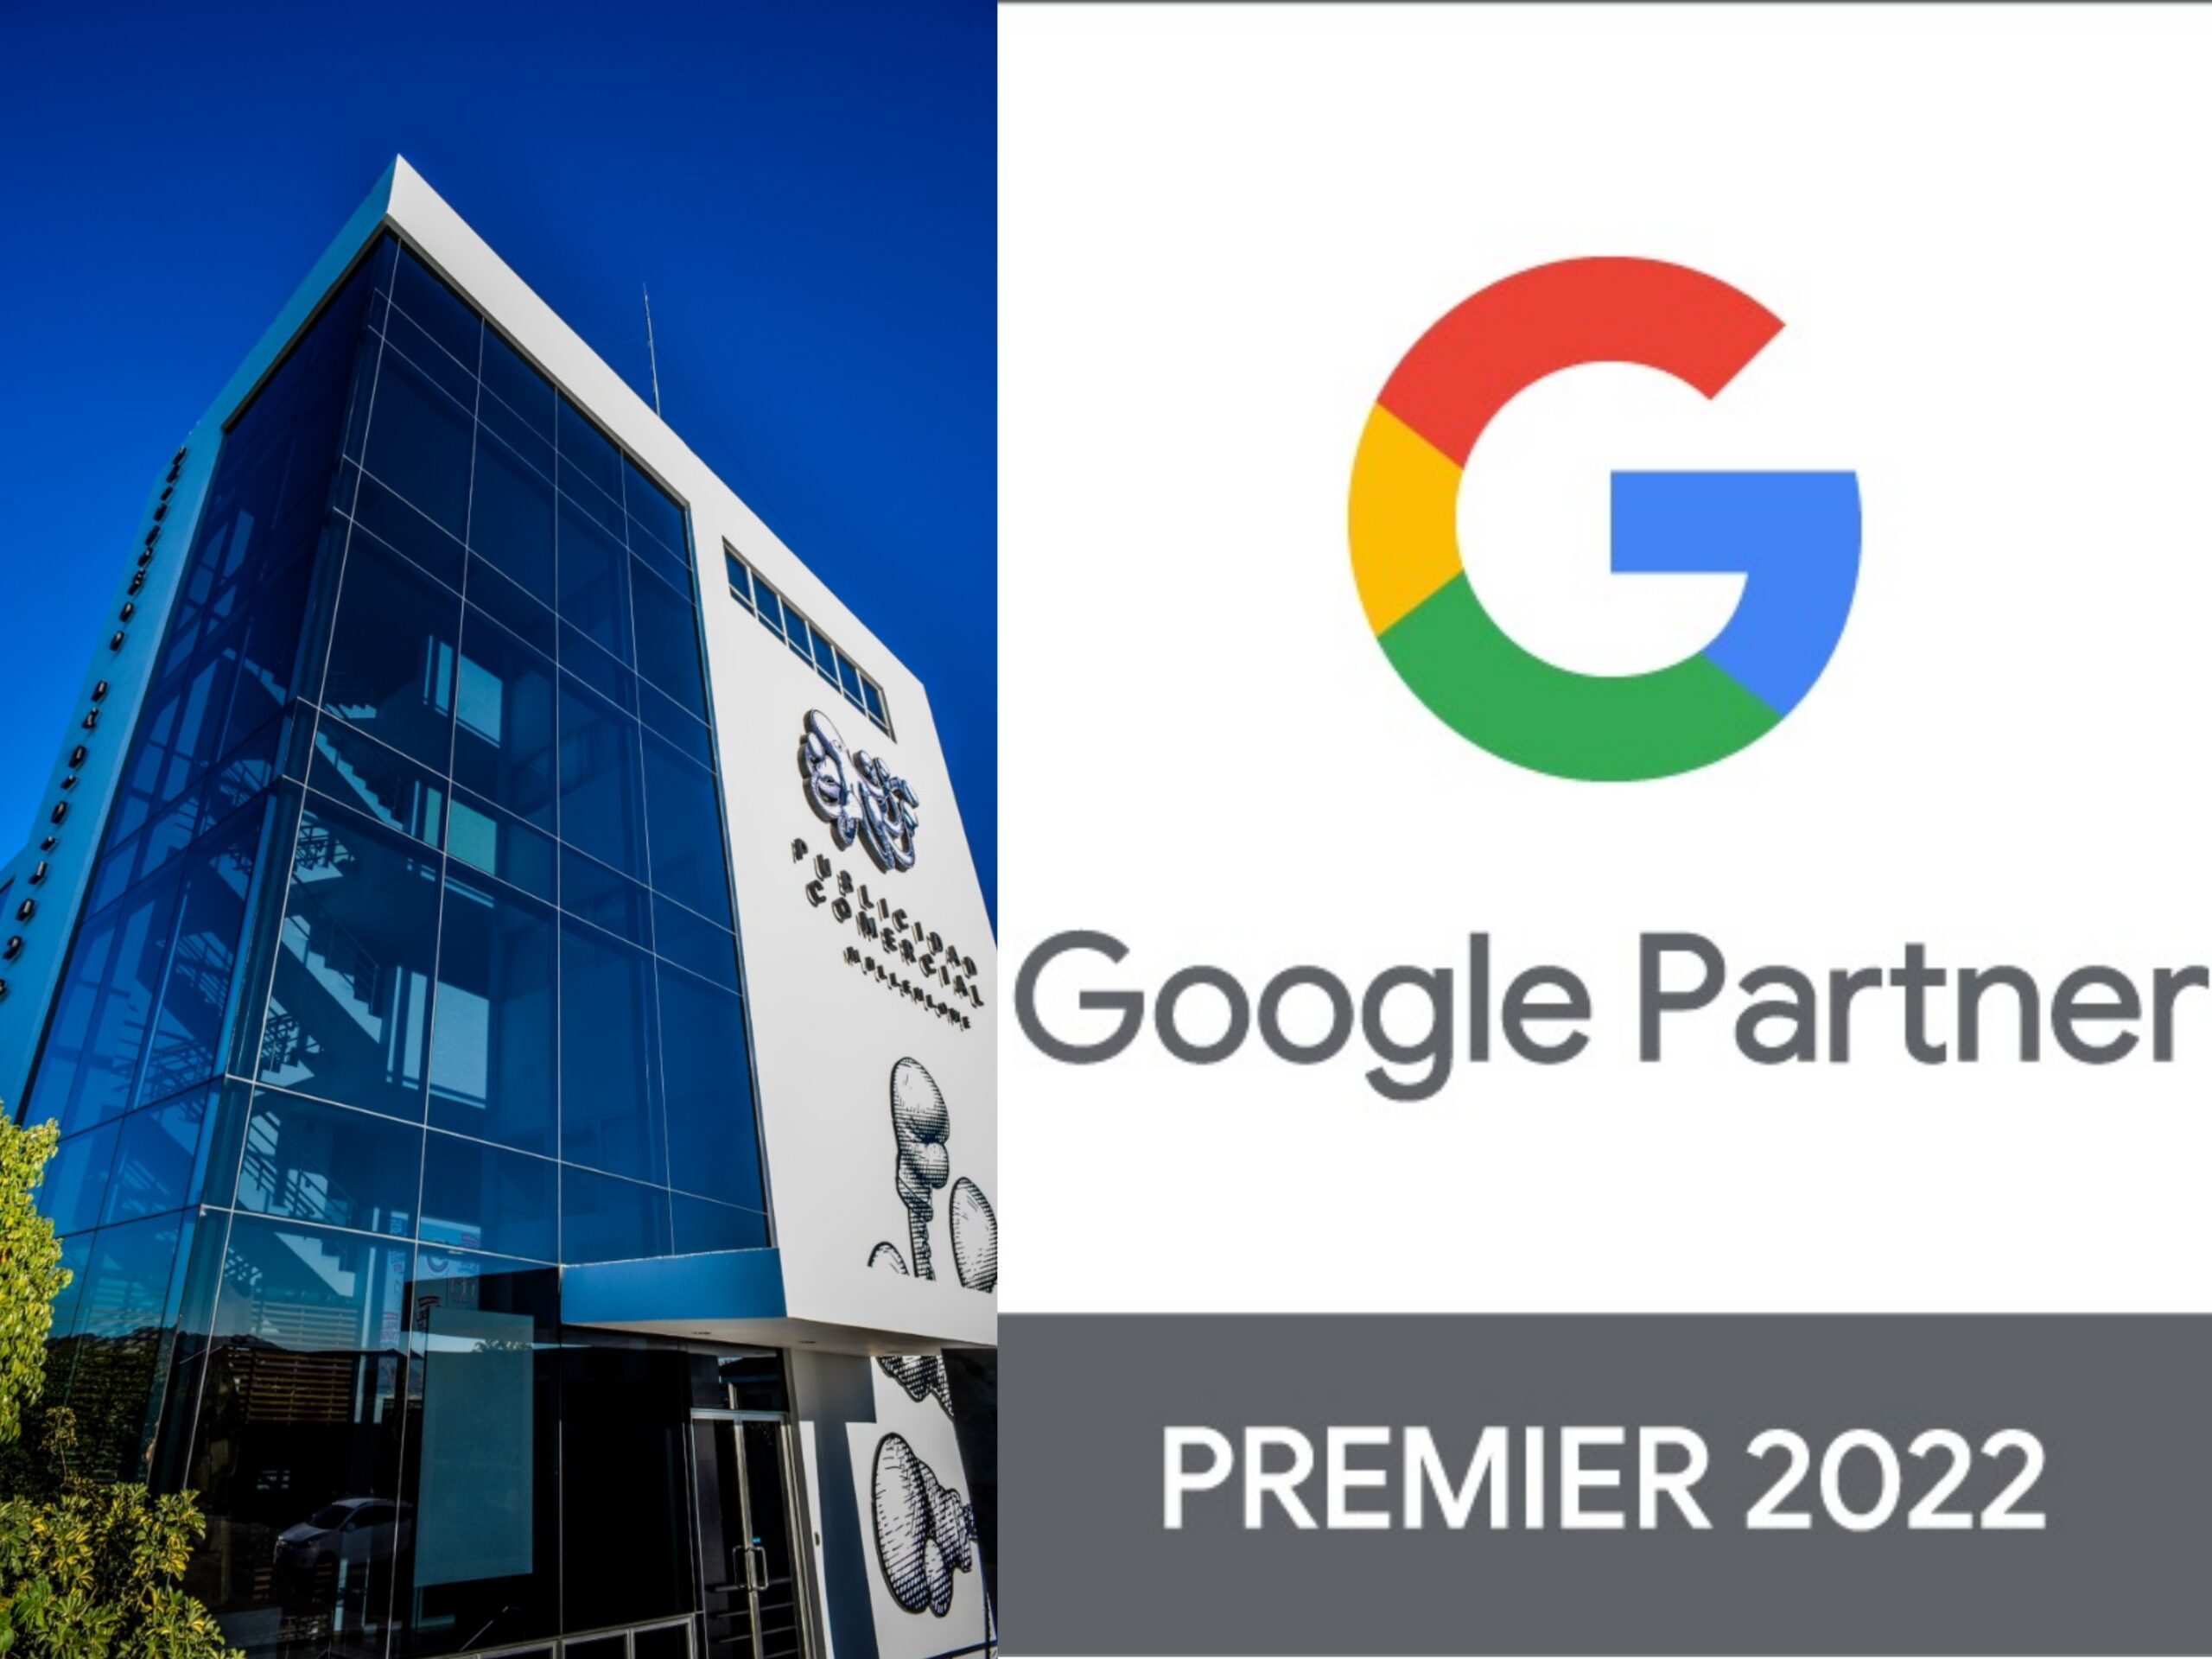 Agencia de publicidad MullenLowe alcanza estatus de Premier Partner 2022 de Google